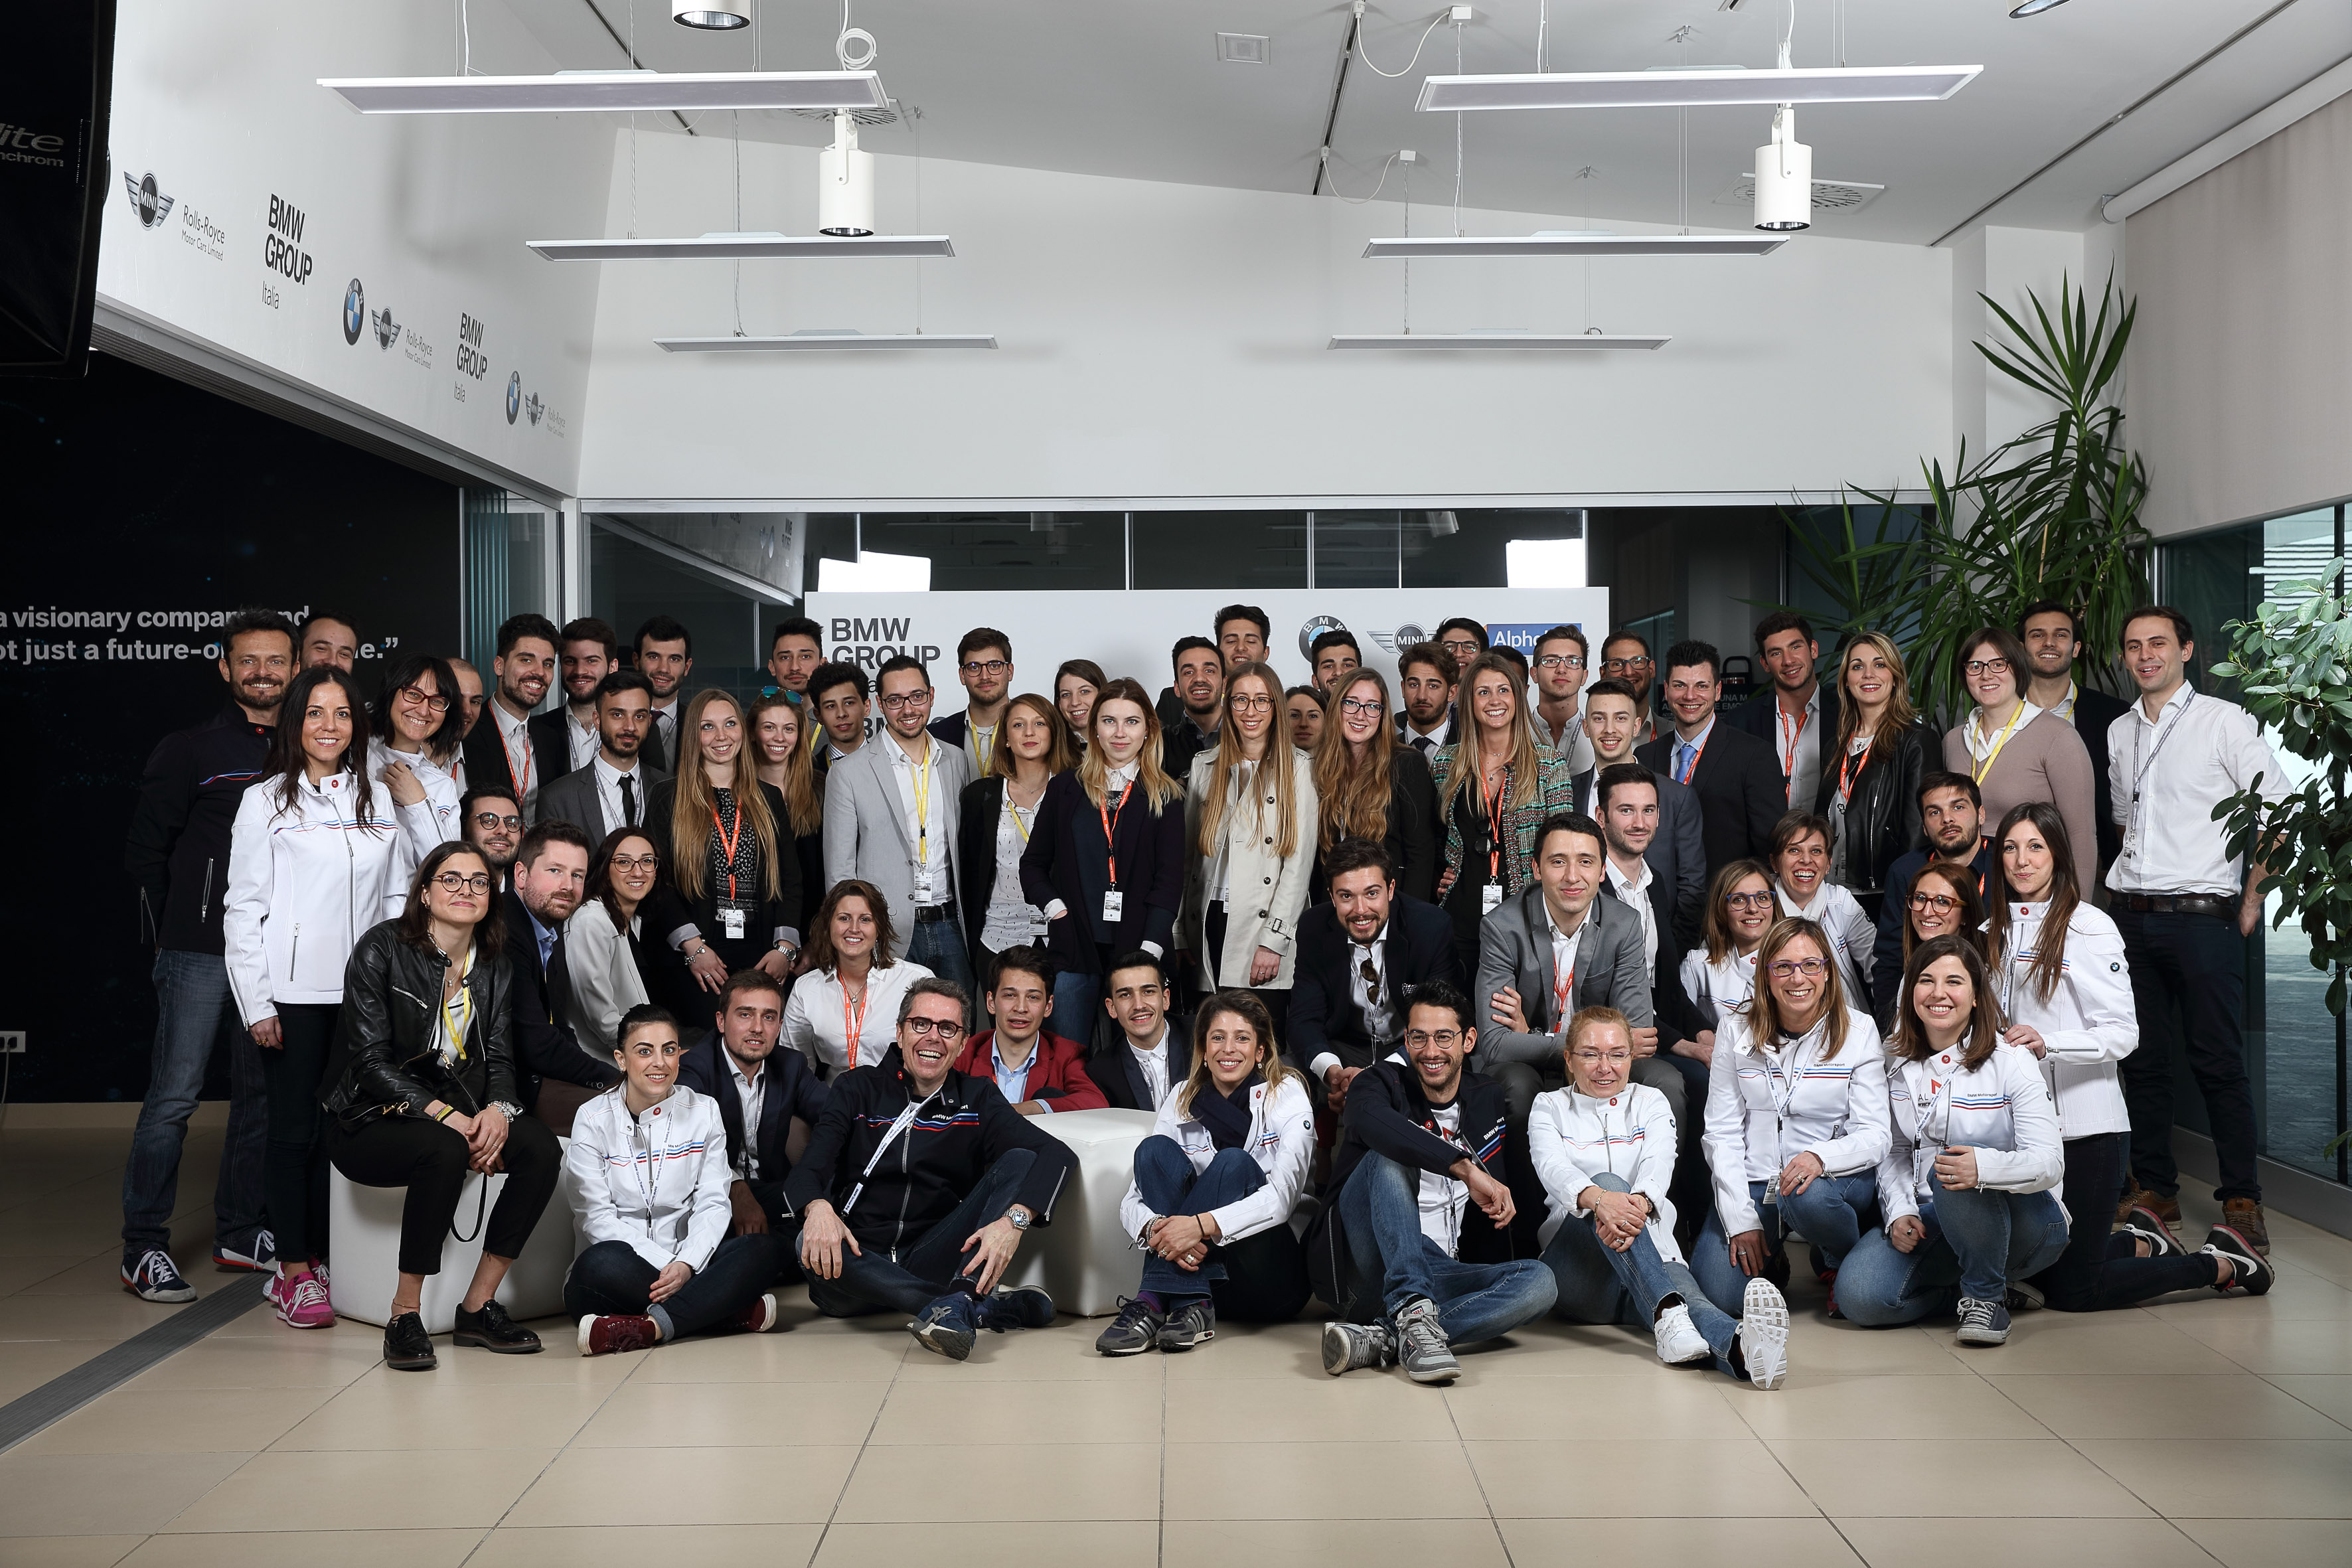 100 giovani studenti e neolaureati al primo BMW Group Italia Open Day. #BMWOpenday